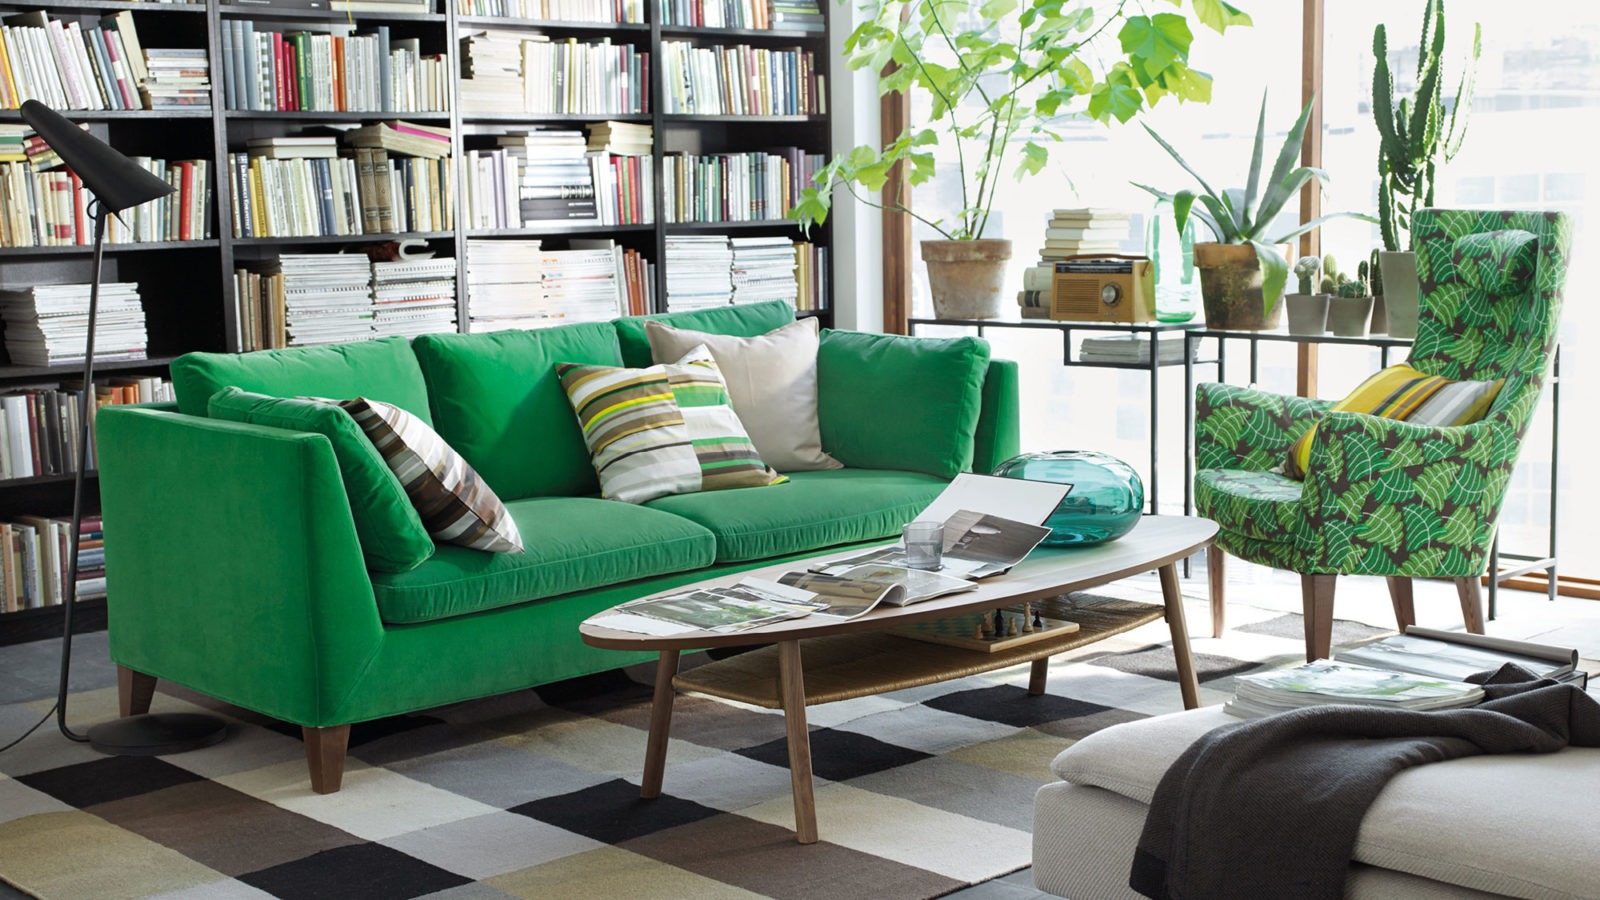 Raum mit grünem Sofa und grün gemustertem Sessel an ovalem Couchtisch. Grünpflanzen vor einem lichtdurchfluteten Fenster.